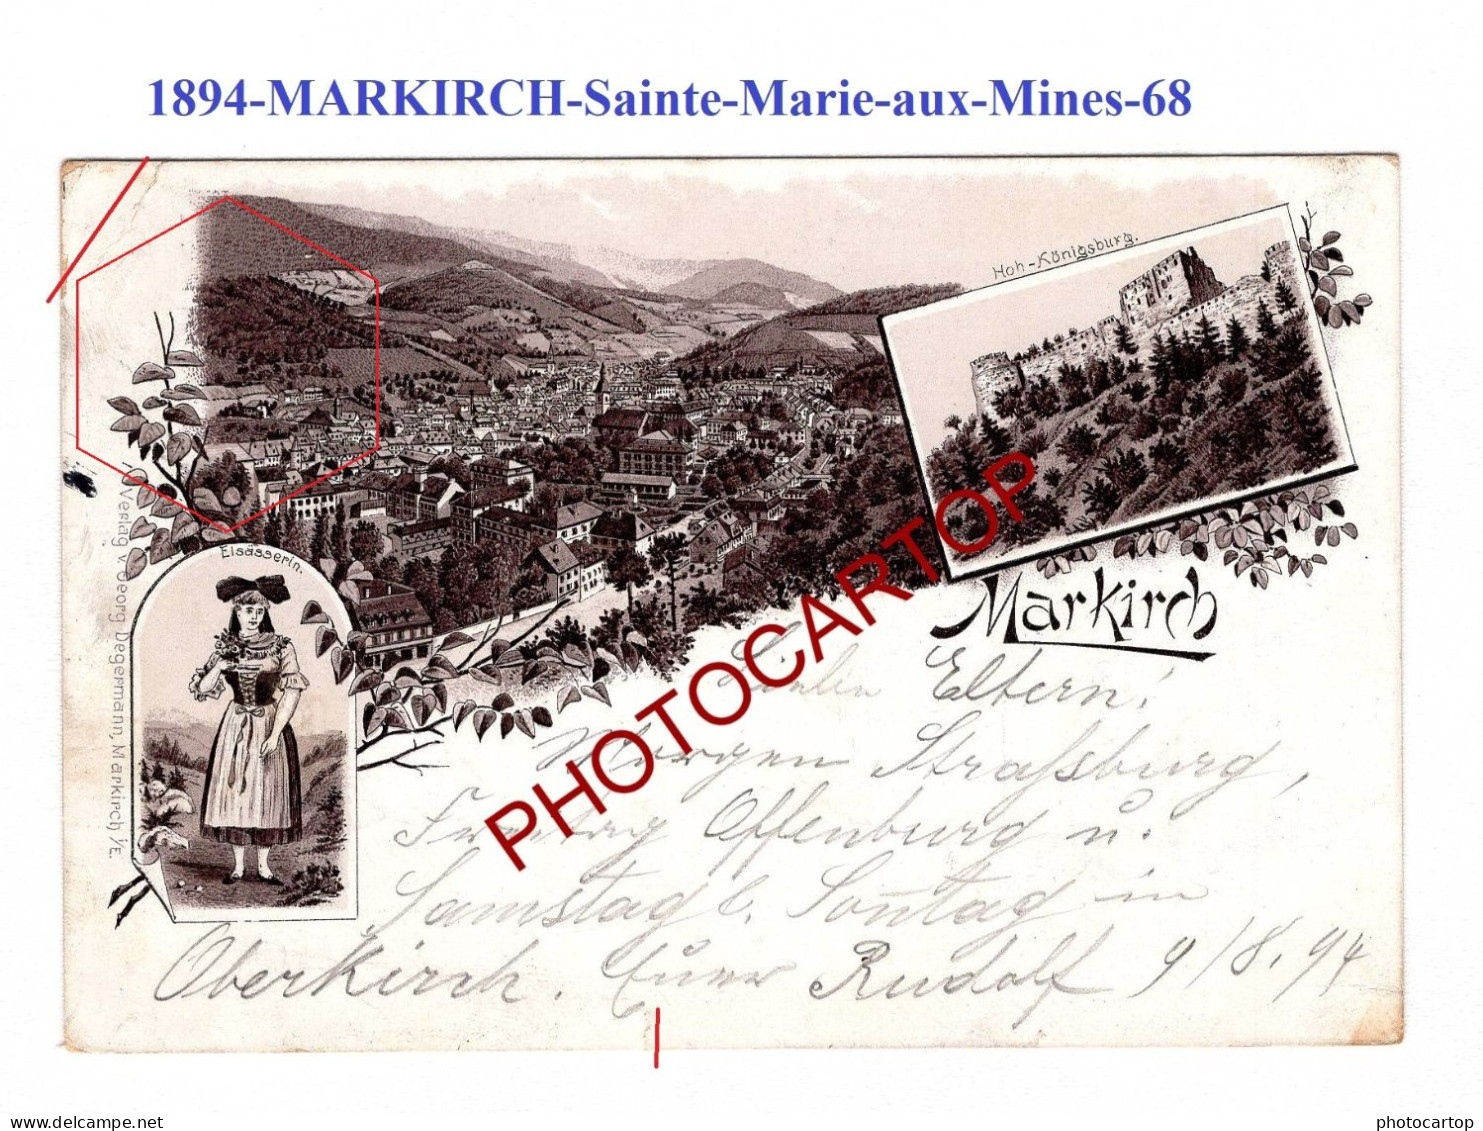 1894-Pionniere-MARKIRCH-Sainte-Marie-aux-Mines-68-CARTE LITHOGRAPHIQUE- - Sainte-Marie-aux-Mines